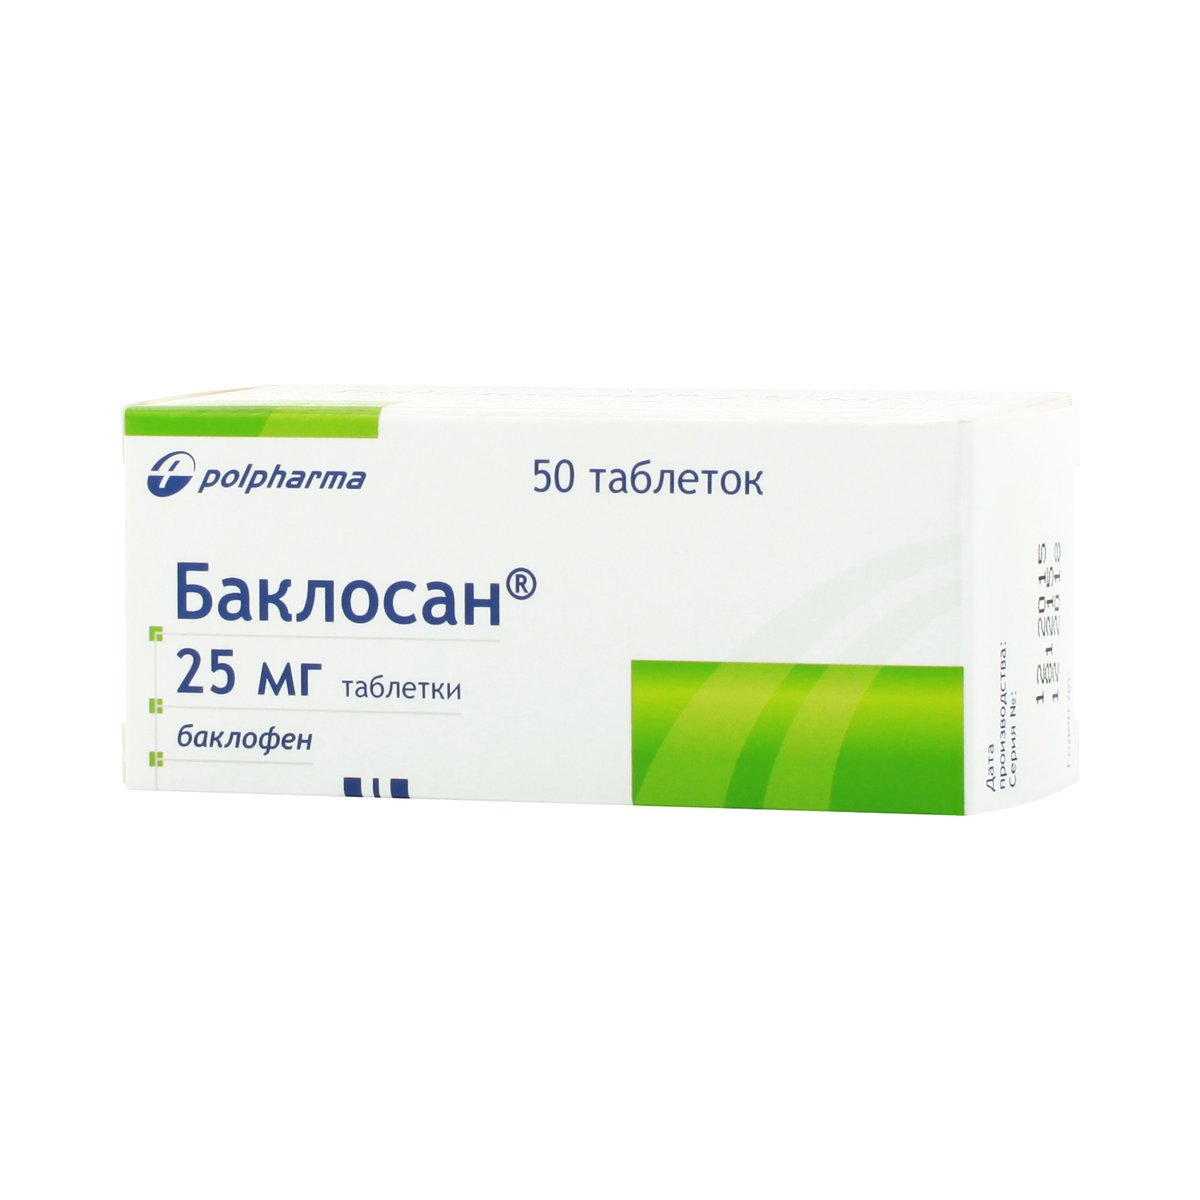 Баклосан (таблетки, 50 шт, 25 мг) - цена,  онлайн  .